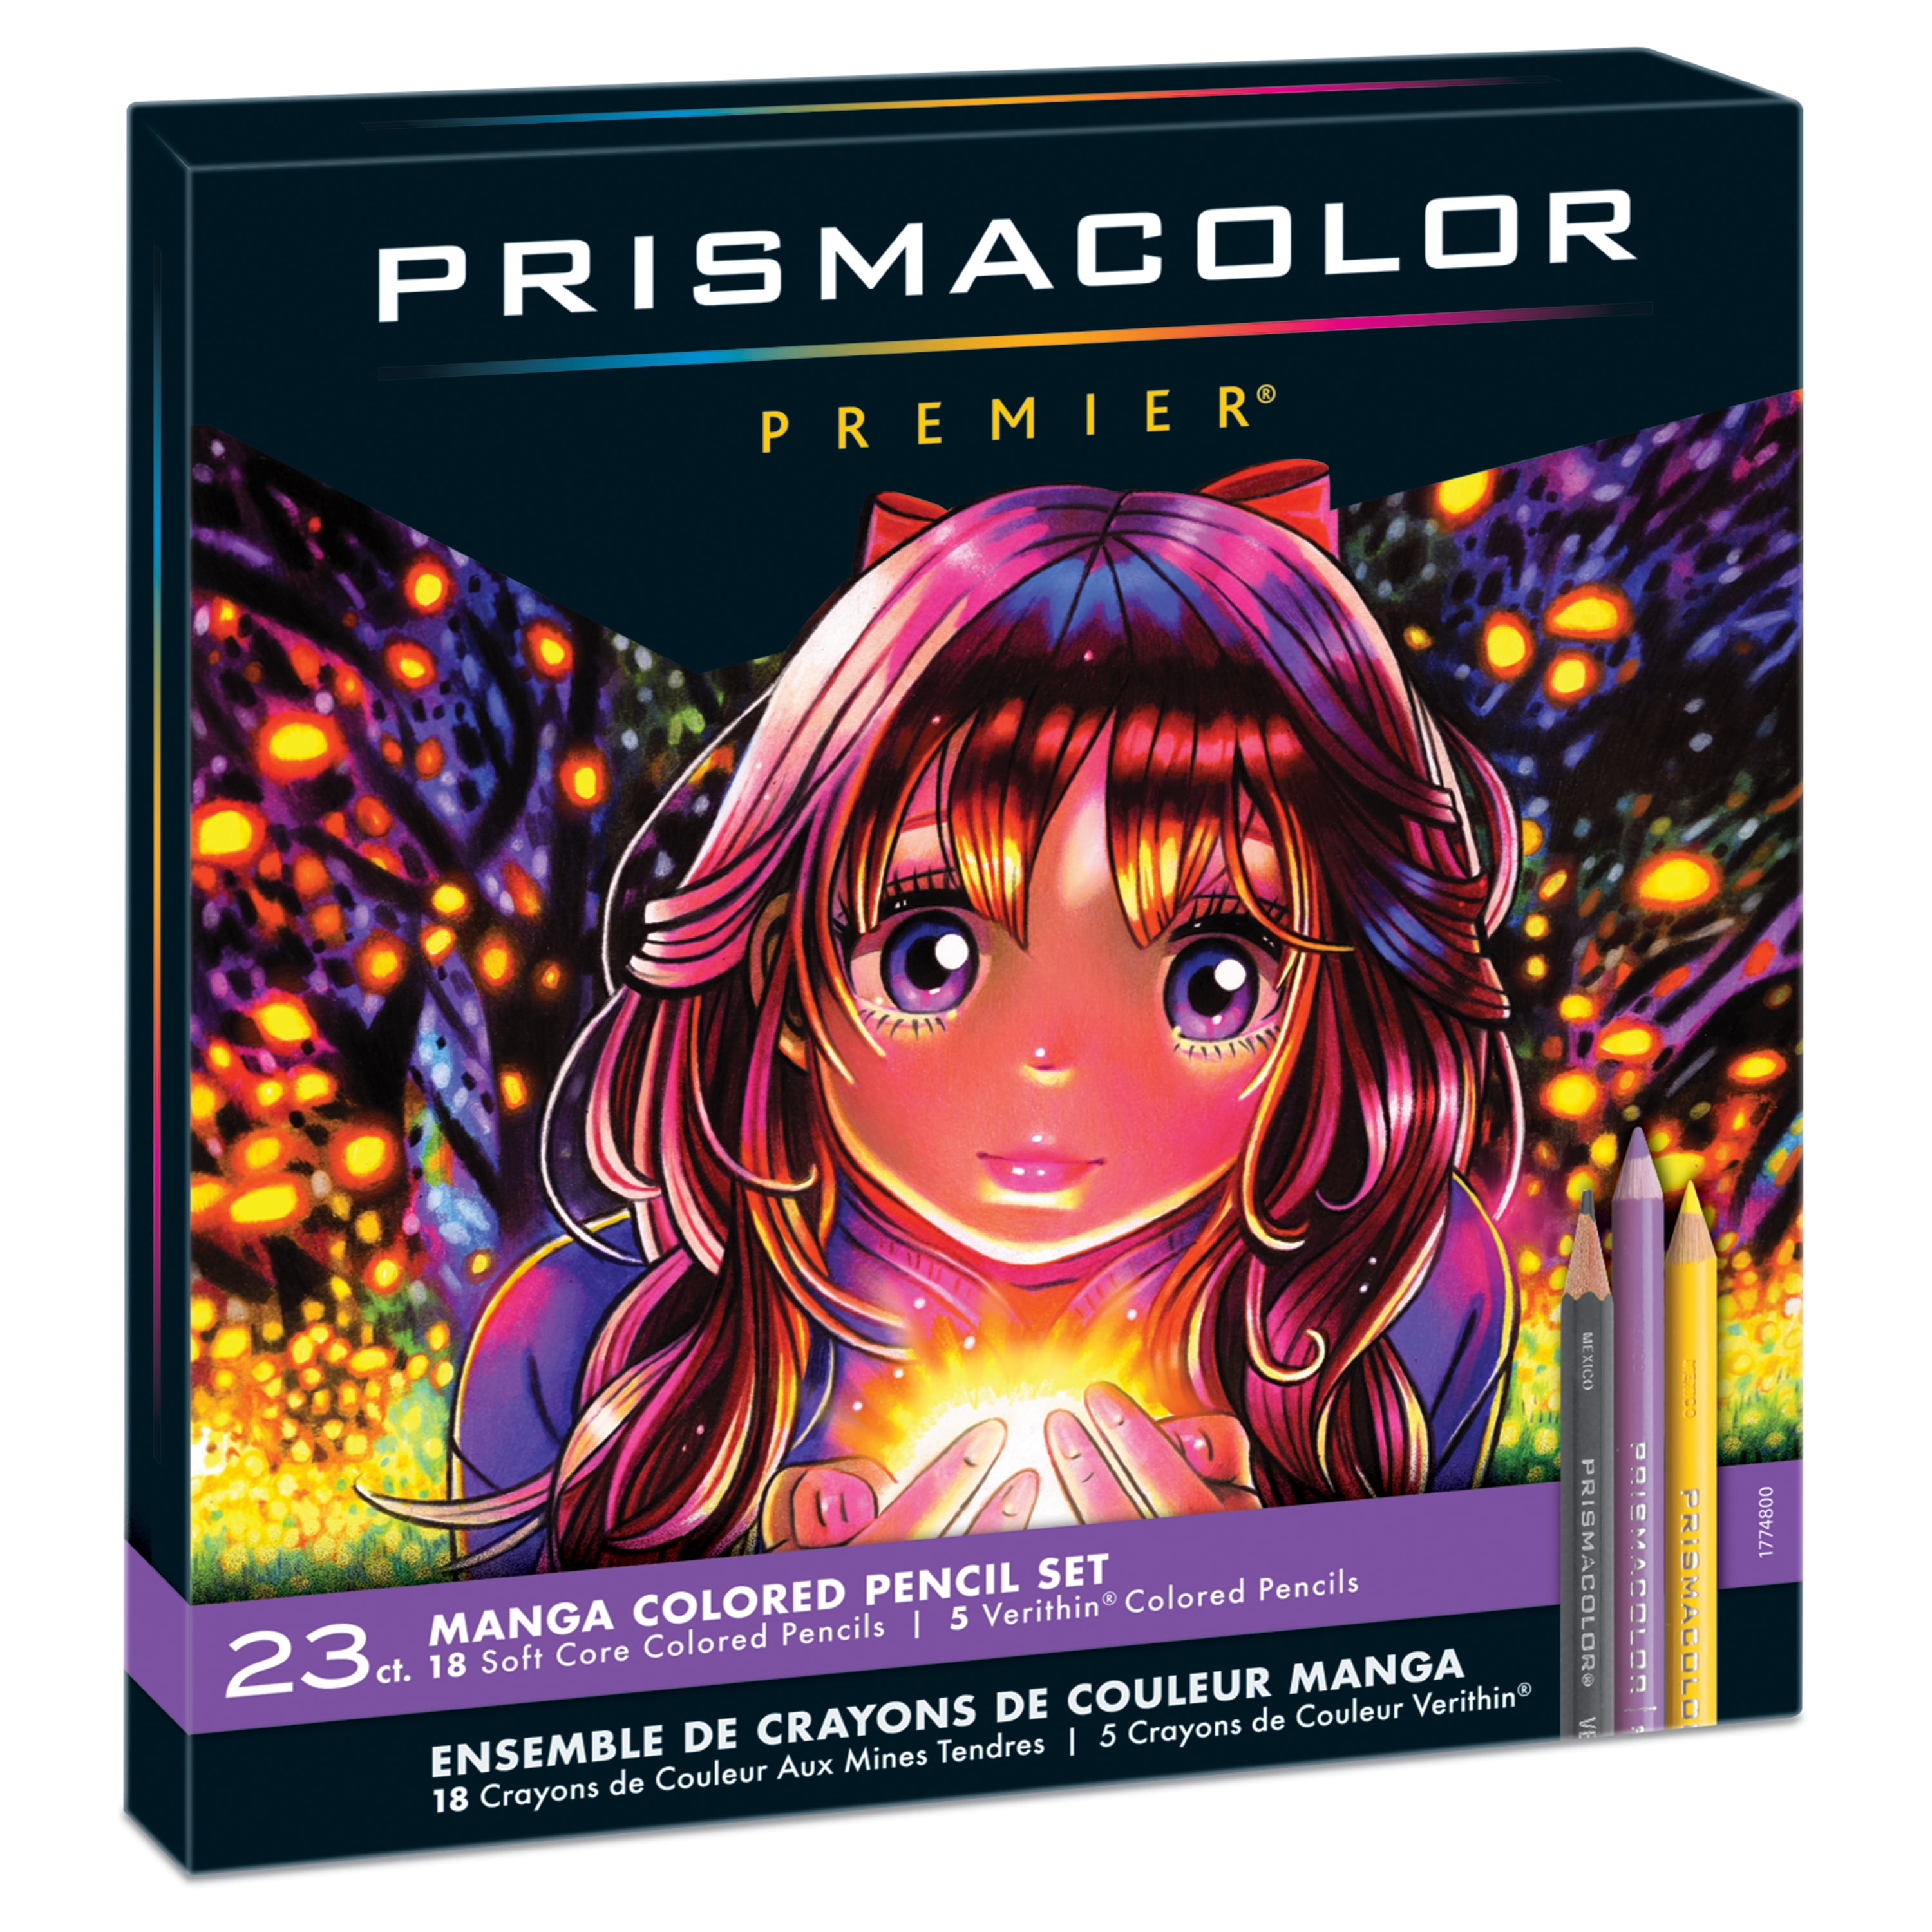 Prismacolor Premier Colored Pencils Soft Core Count Color Set 24 Pack Pencil 